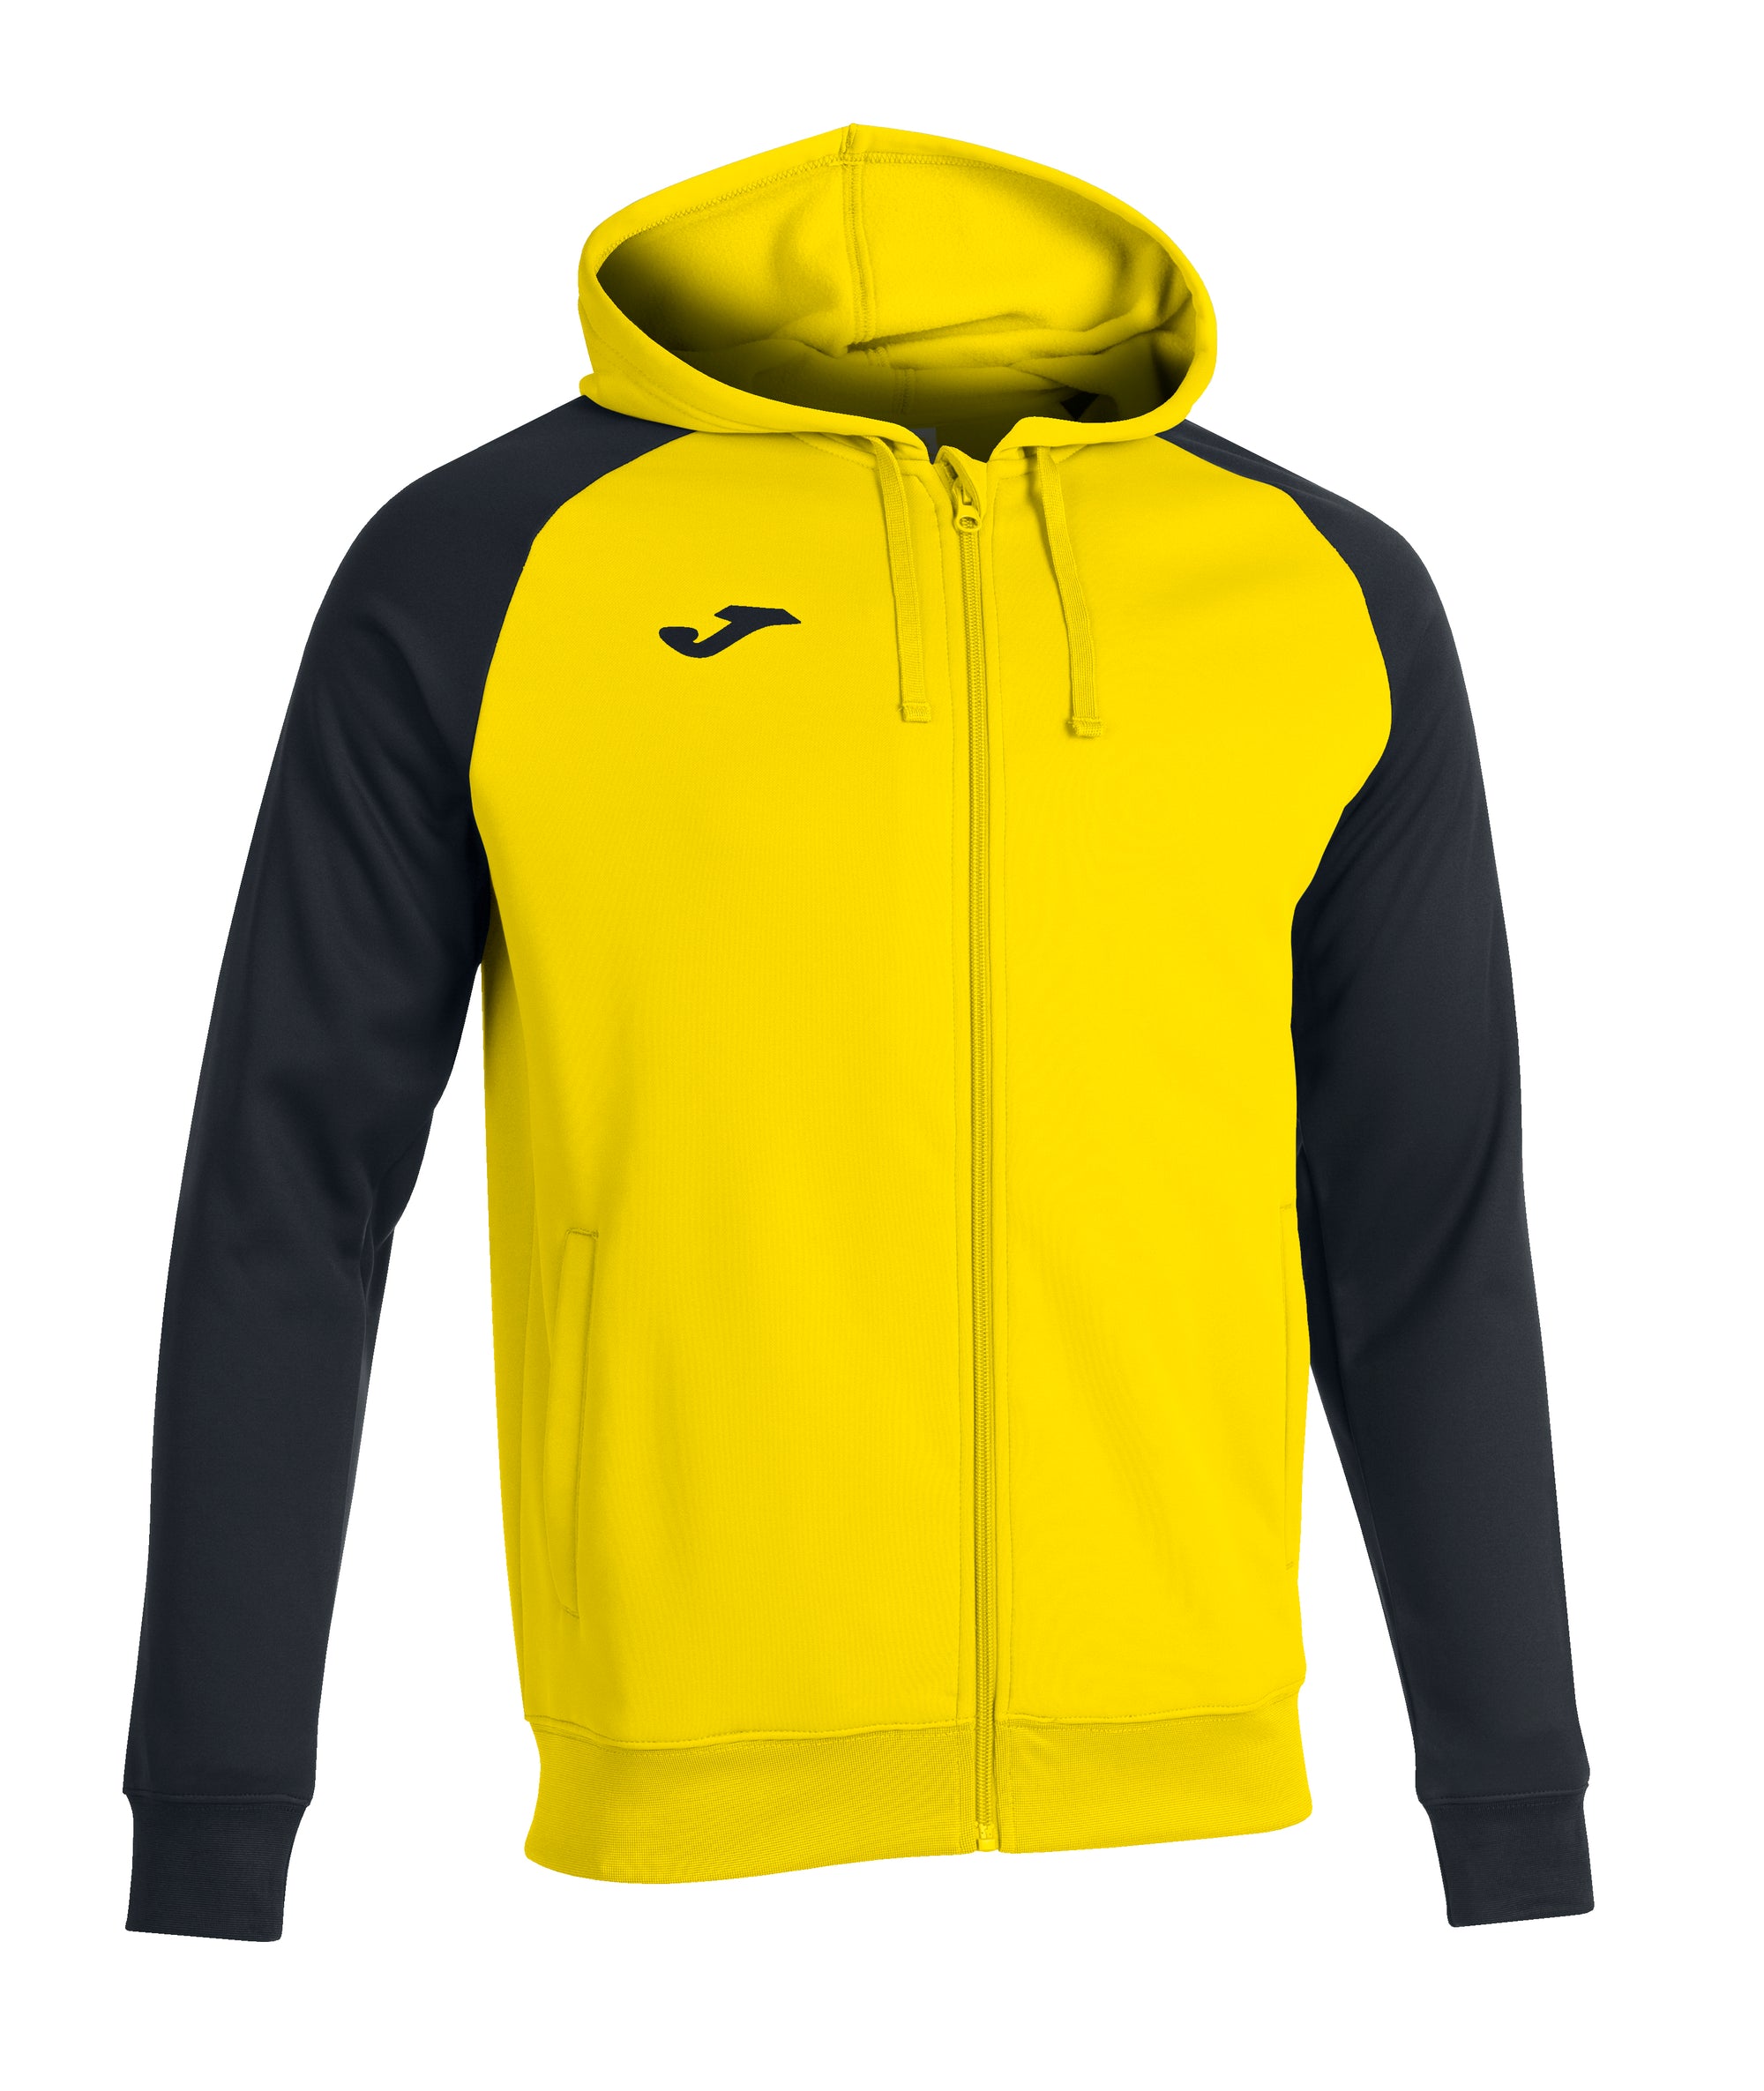 Joma Academy IV Hoodie Jacket - Yellow/Black